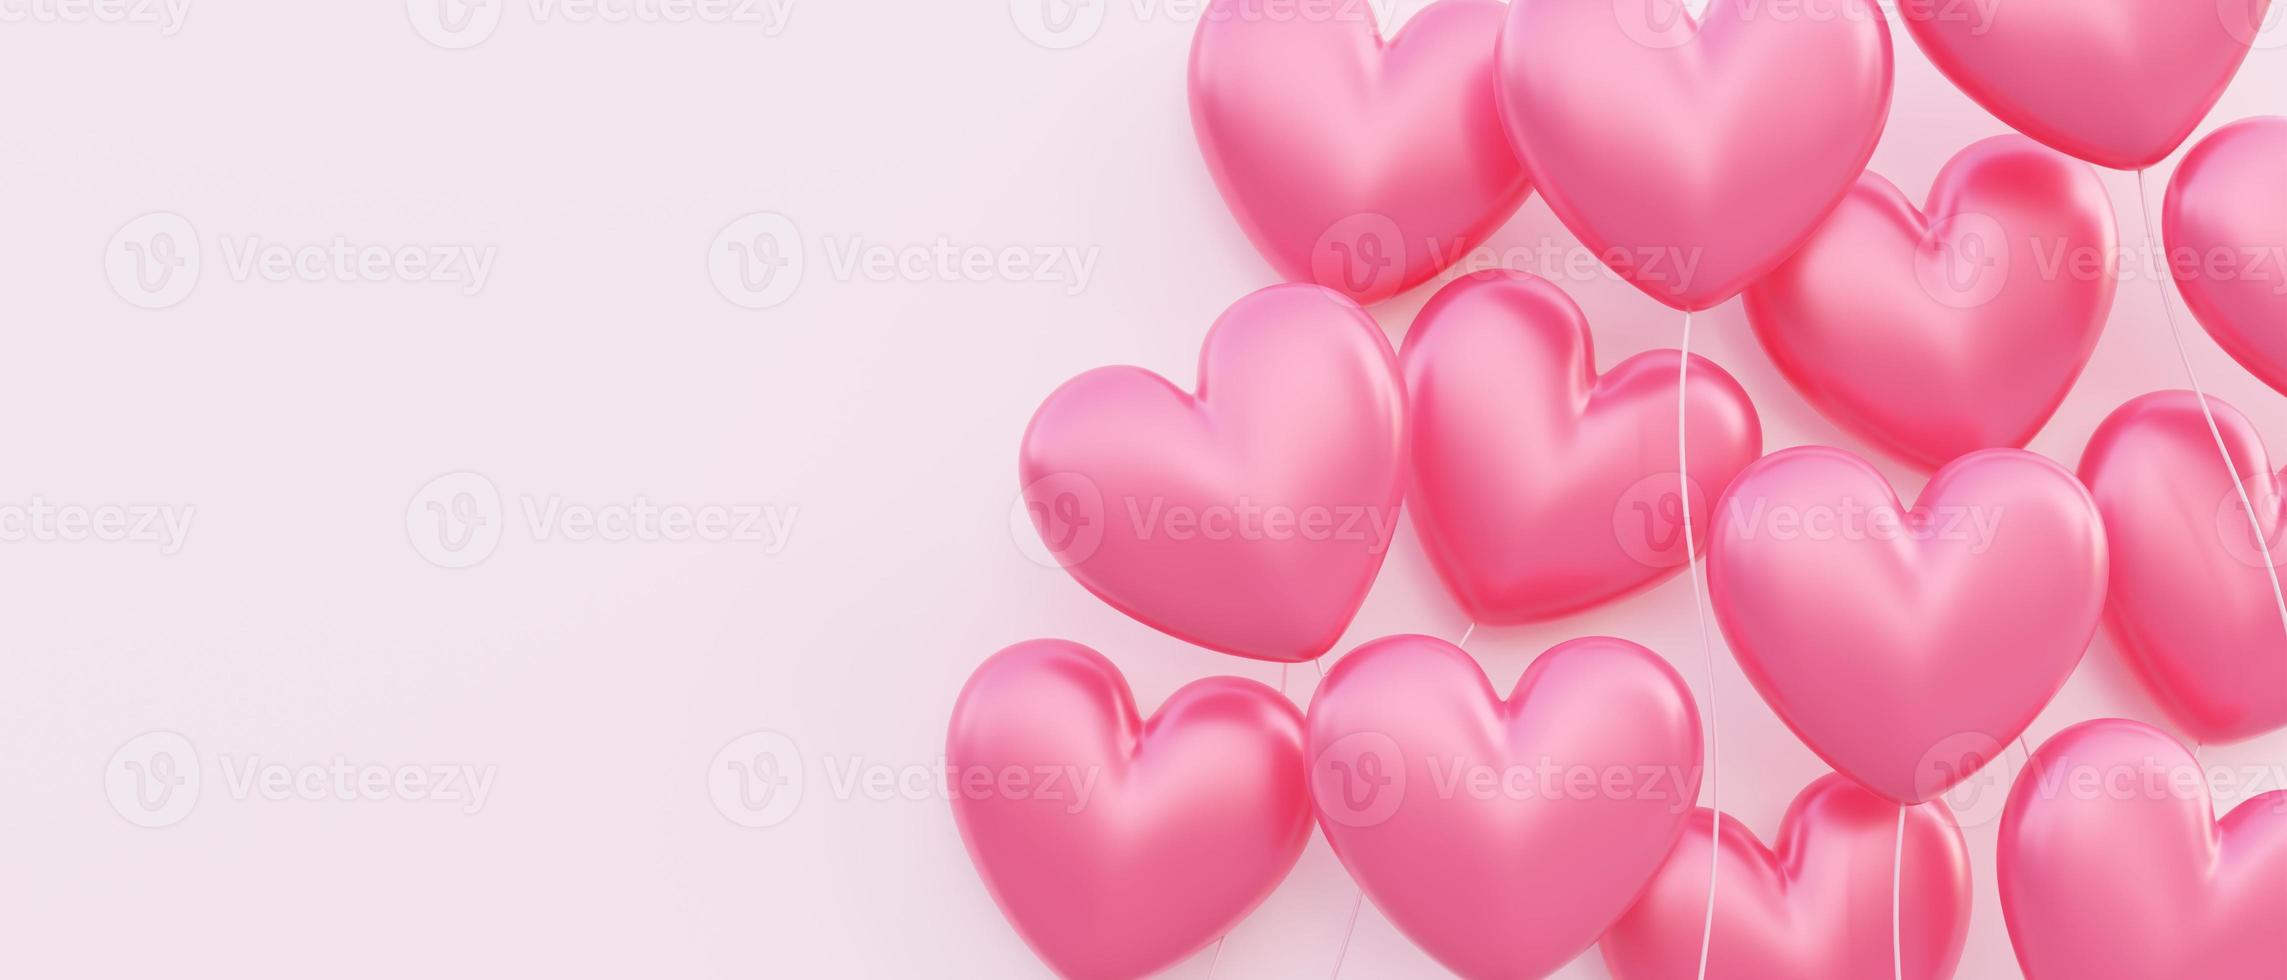 alla hjärtans dag banner bakgrund, 3d illustration av röda hjärtformade ballonger flytande överlappande foto